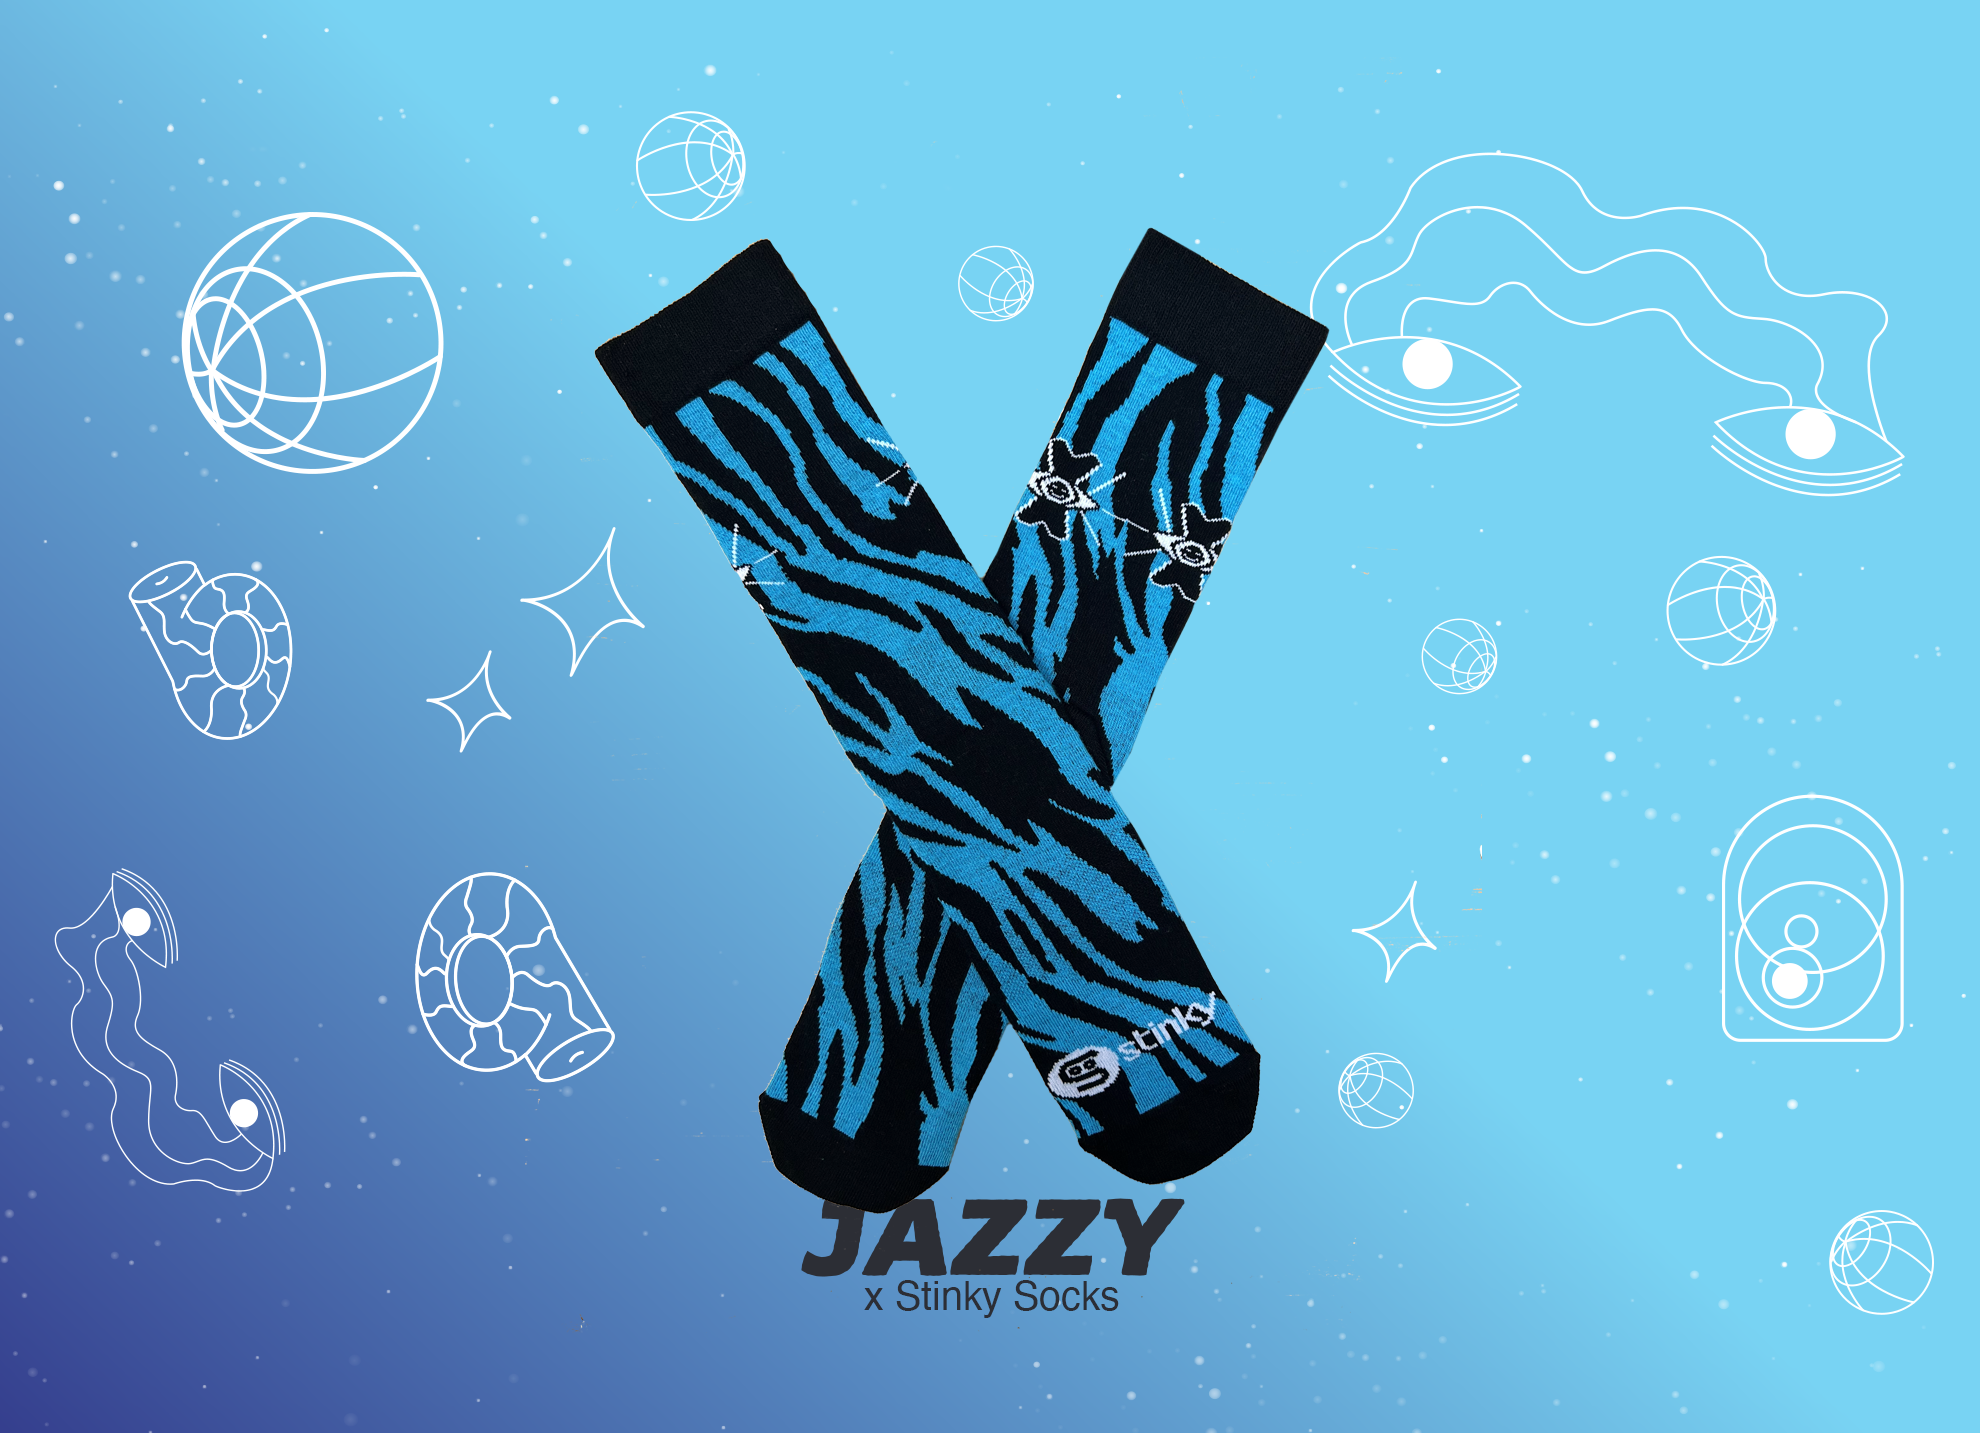 Stinky-Socks-x-Jazzy_catalog-page-ai